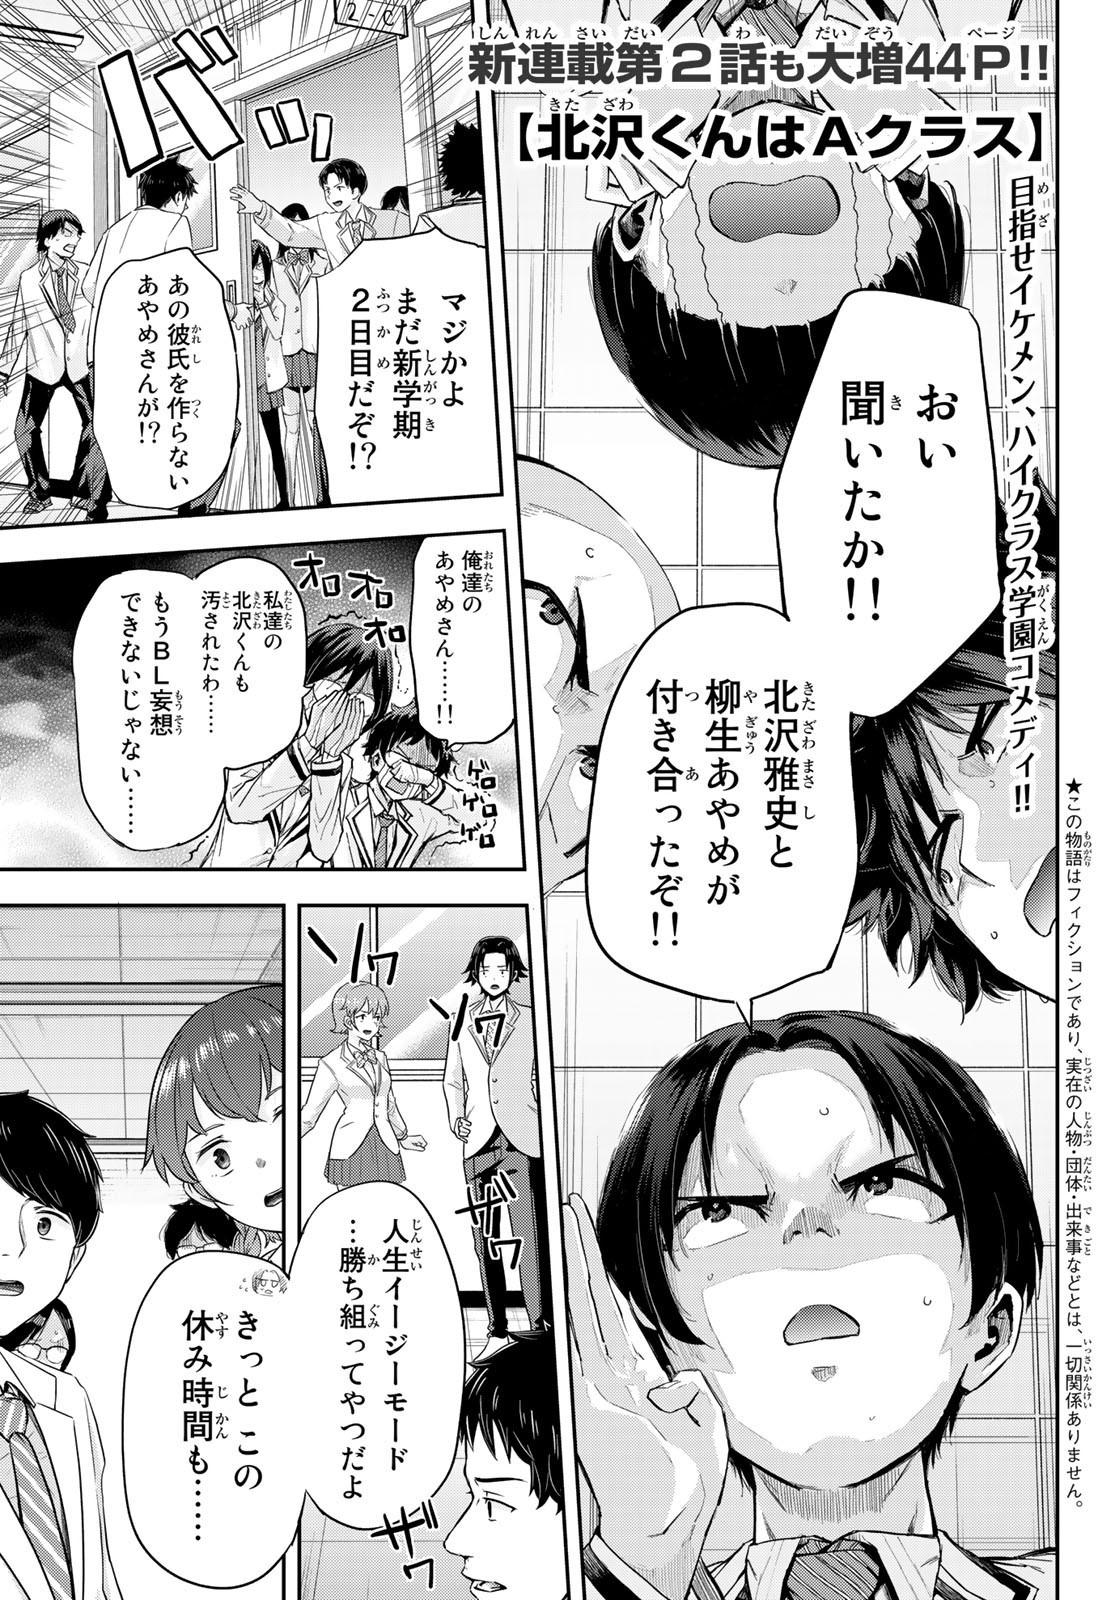 Kitazawa-kun wa A Class - Chapter 002 - Page 1